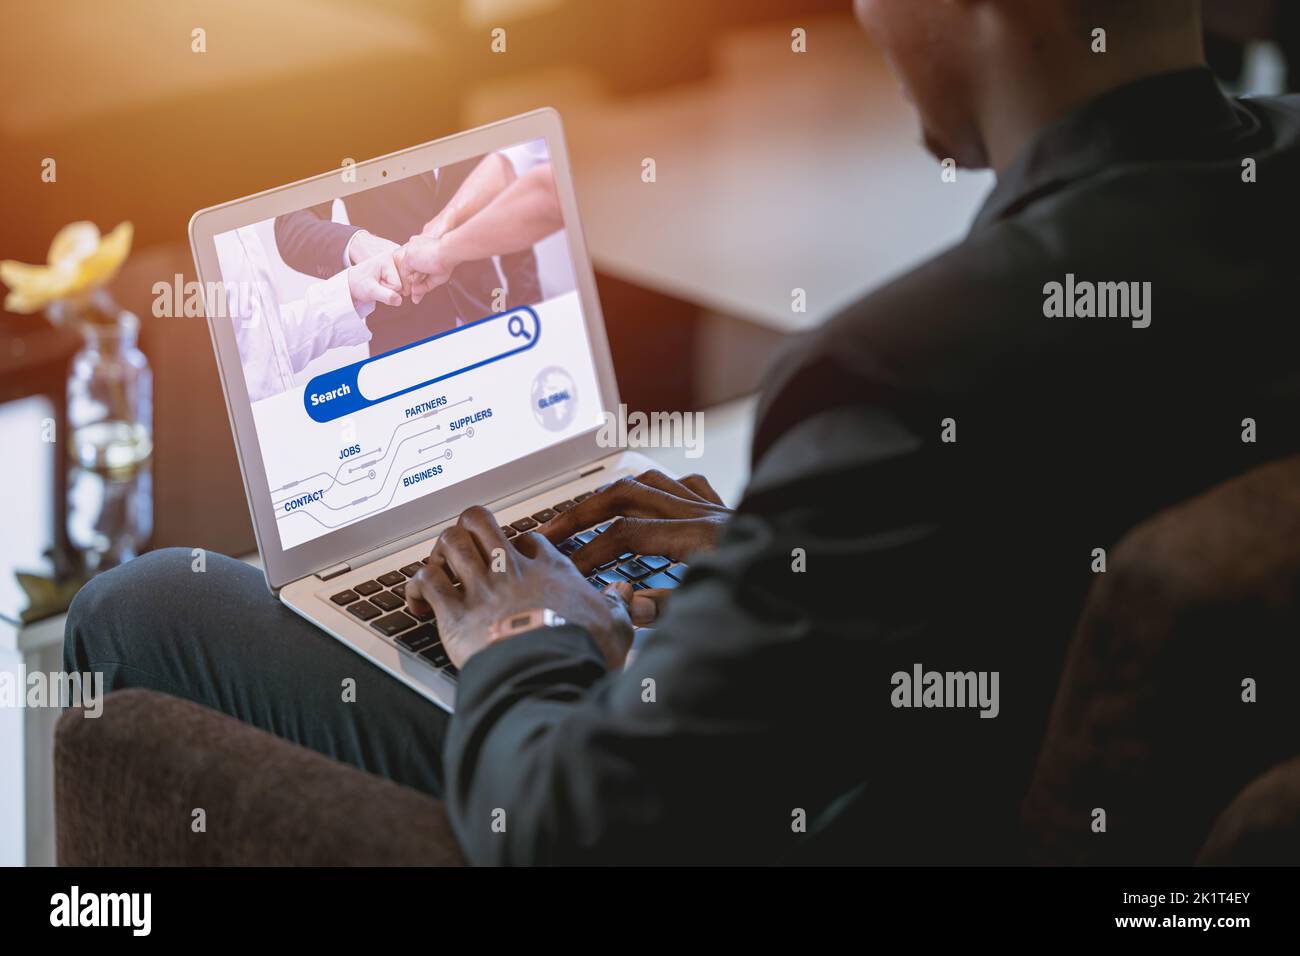 pantalla de primer plano del motor de búsqueda del hombre de negocios que utiliza la computadora portátil Foto de stock